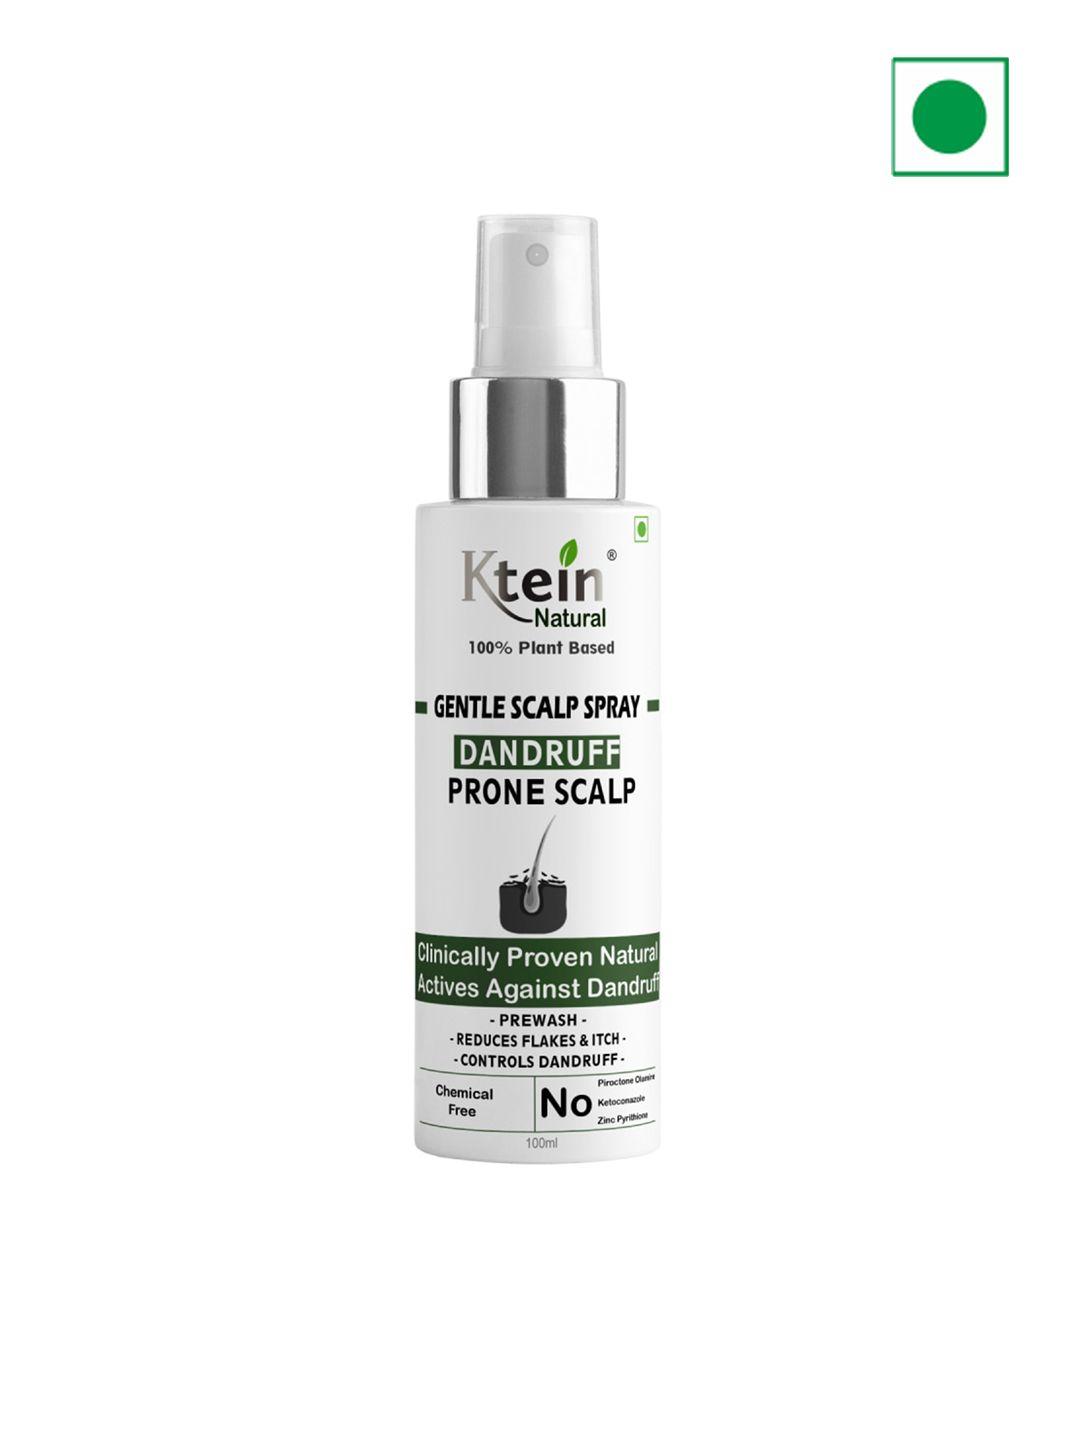 ktein natural gentle scalp spray for dandruff prone scalp - 100ml